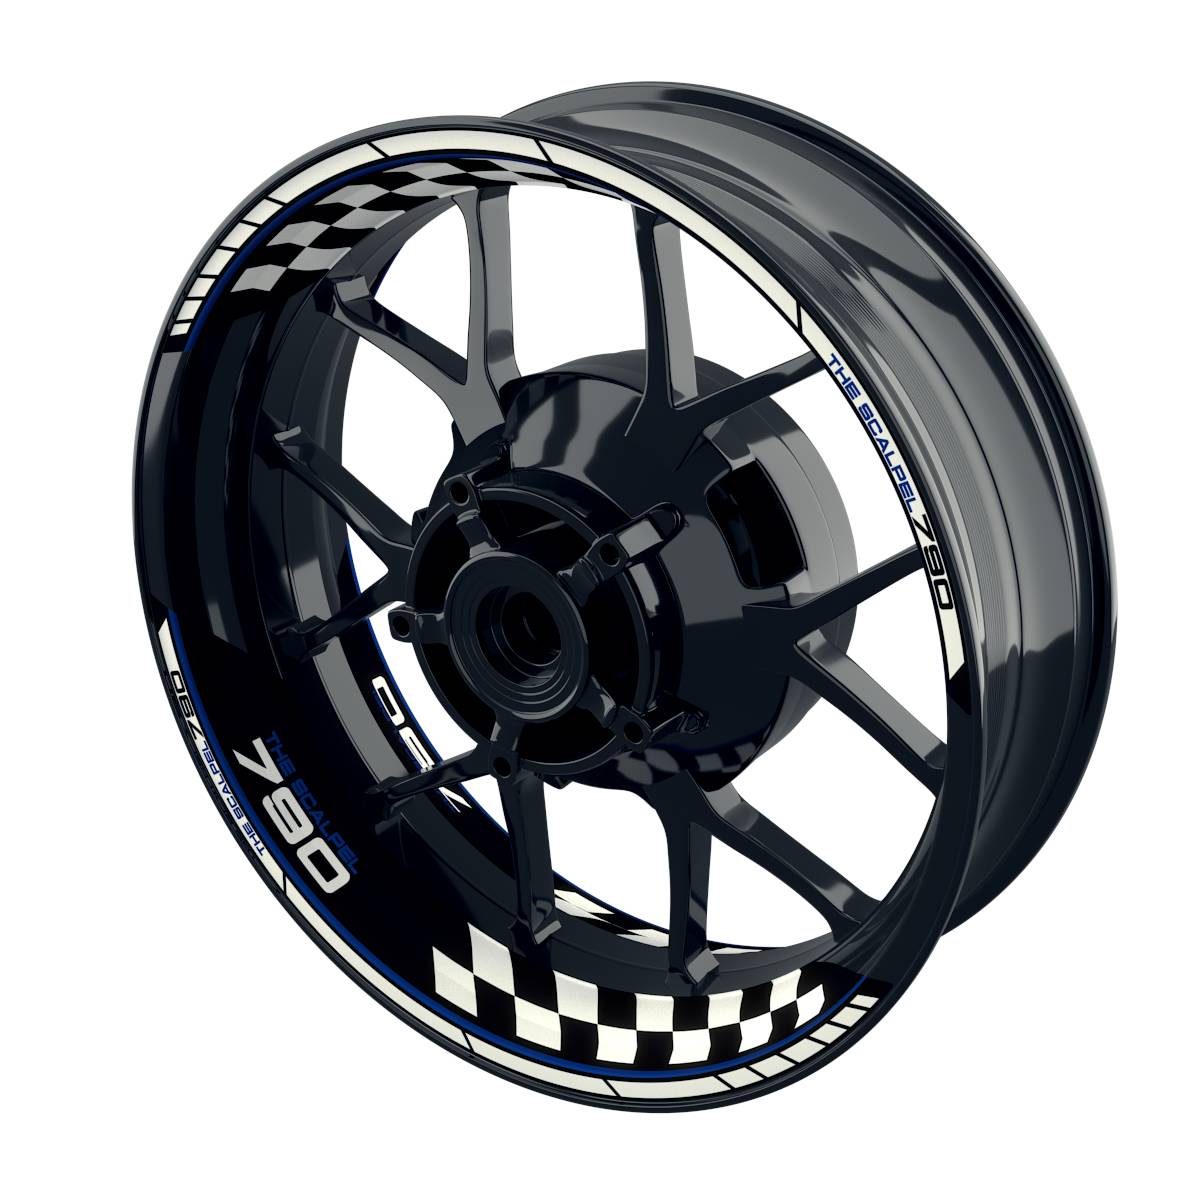 THE SCALPEL 790 Grid Felgenaufkleber Wheelsticker Premium geteilt